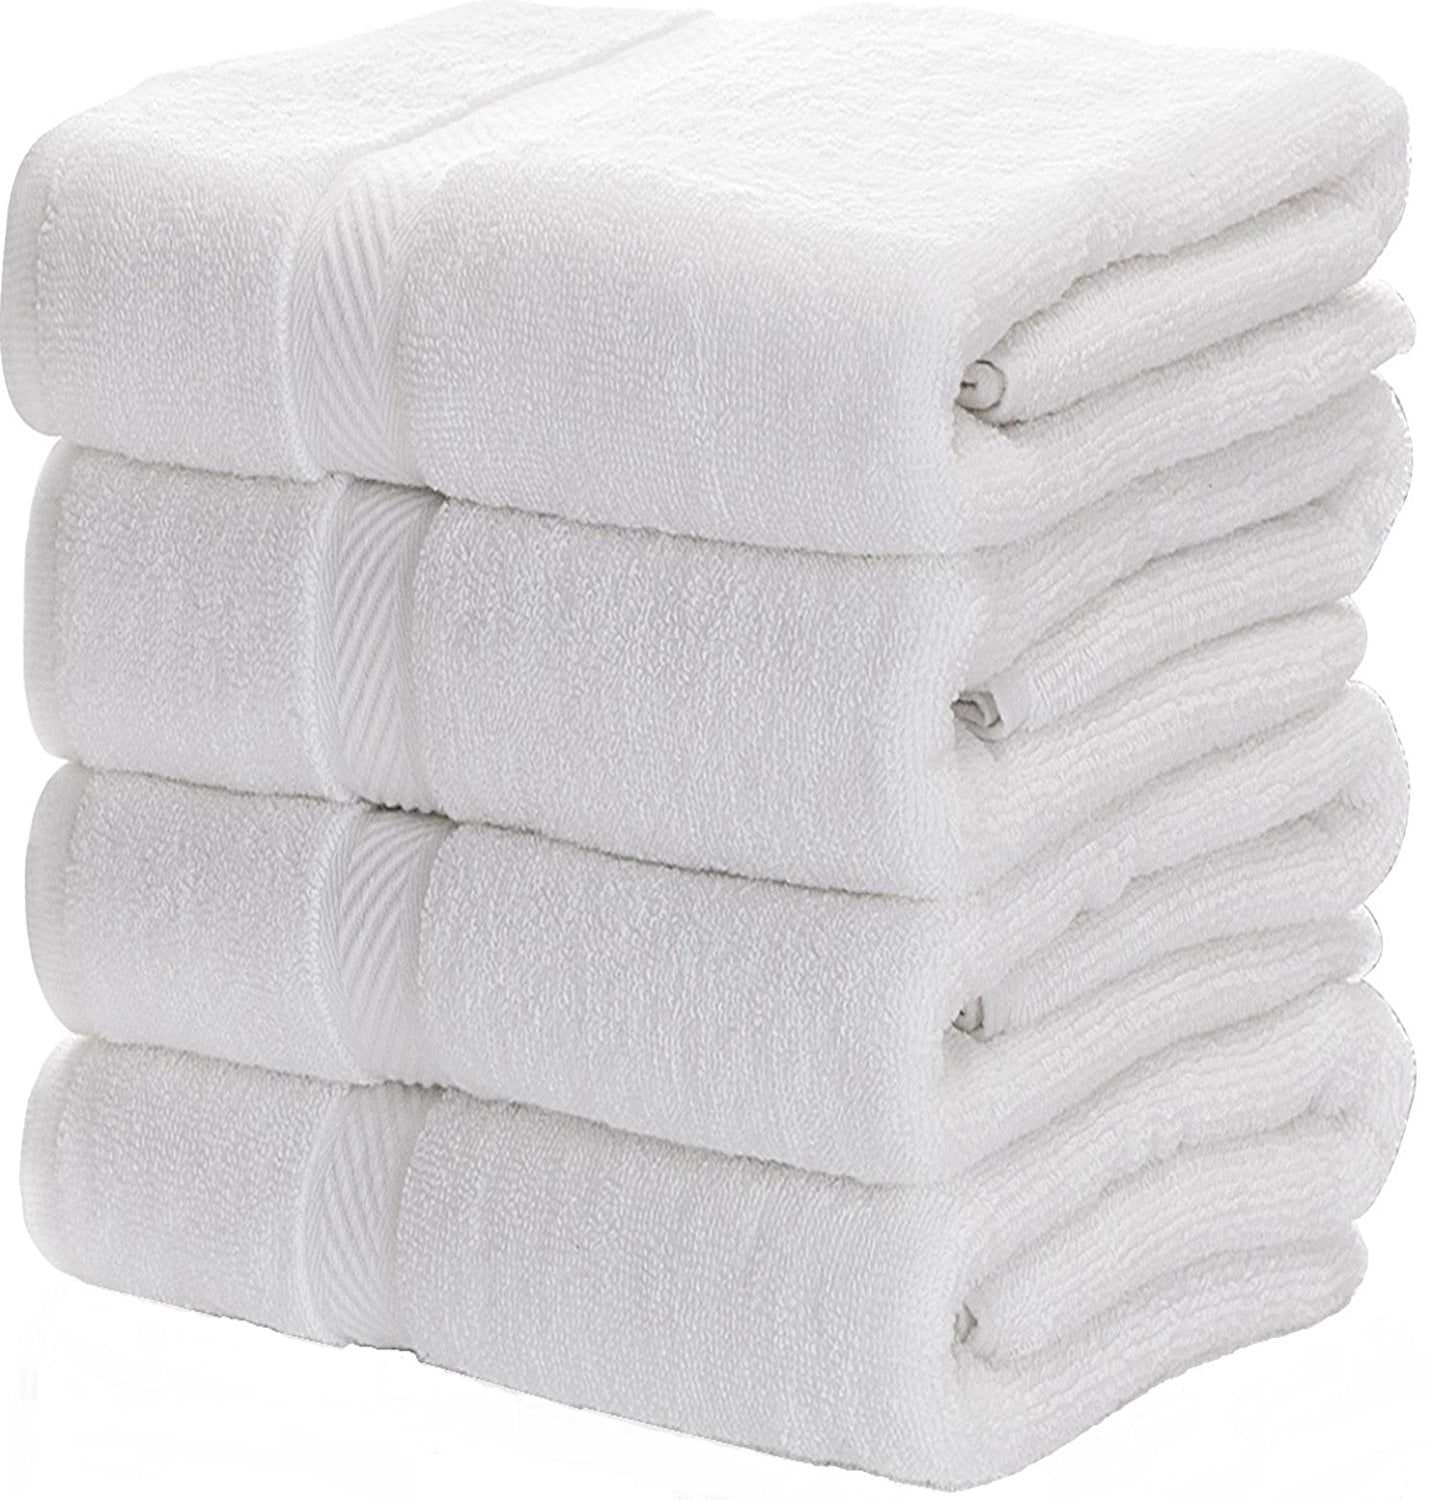 order towels